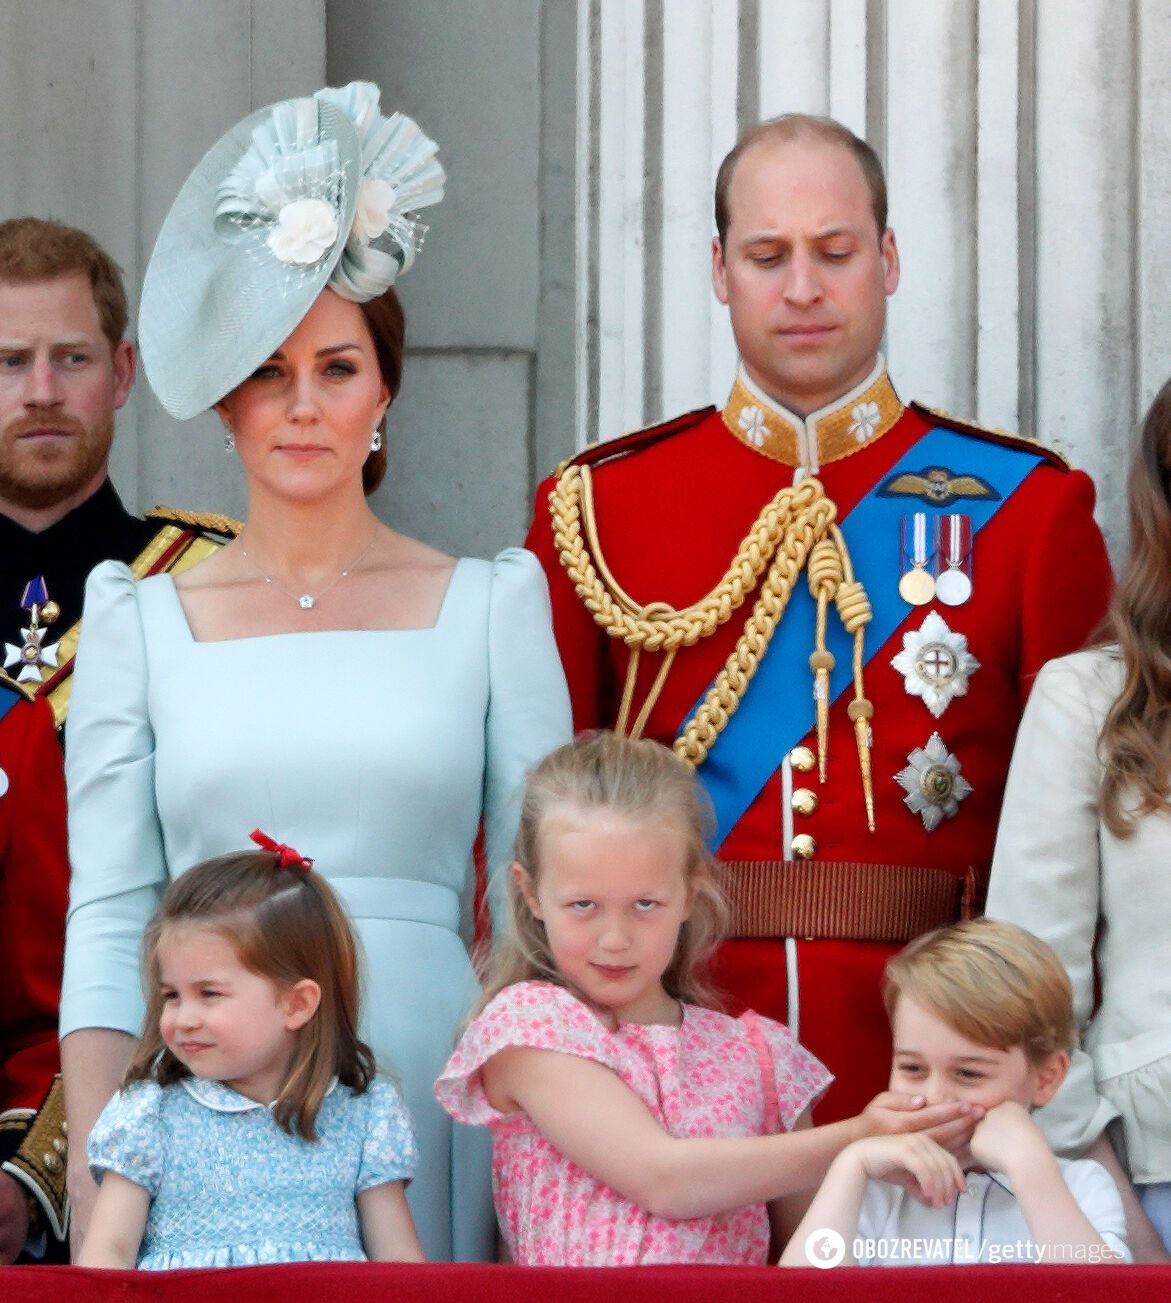 Książę Harry pokazuje język, a król Karol pozuje ze Shrekiem. 20 zabawnych zdjęć rodziny królewskiej